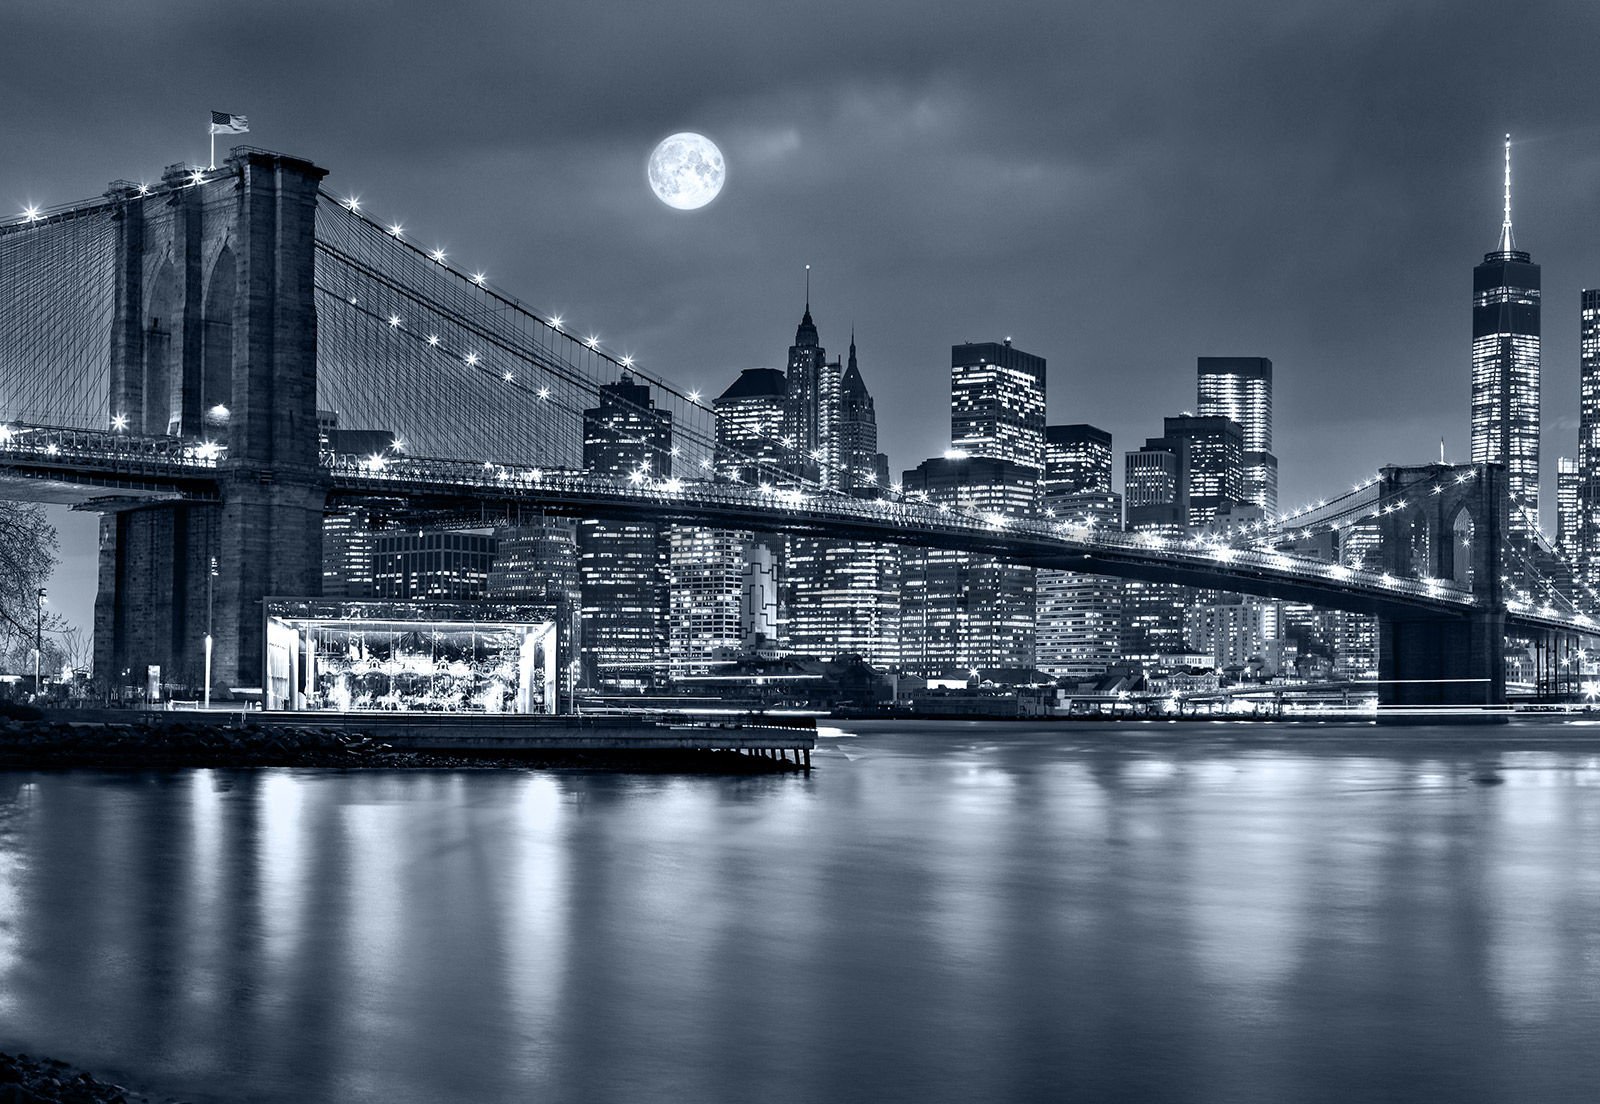 Vlies foto tapeta: Brooklyn Bridge (5) - 254x368 cm